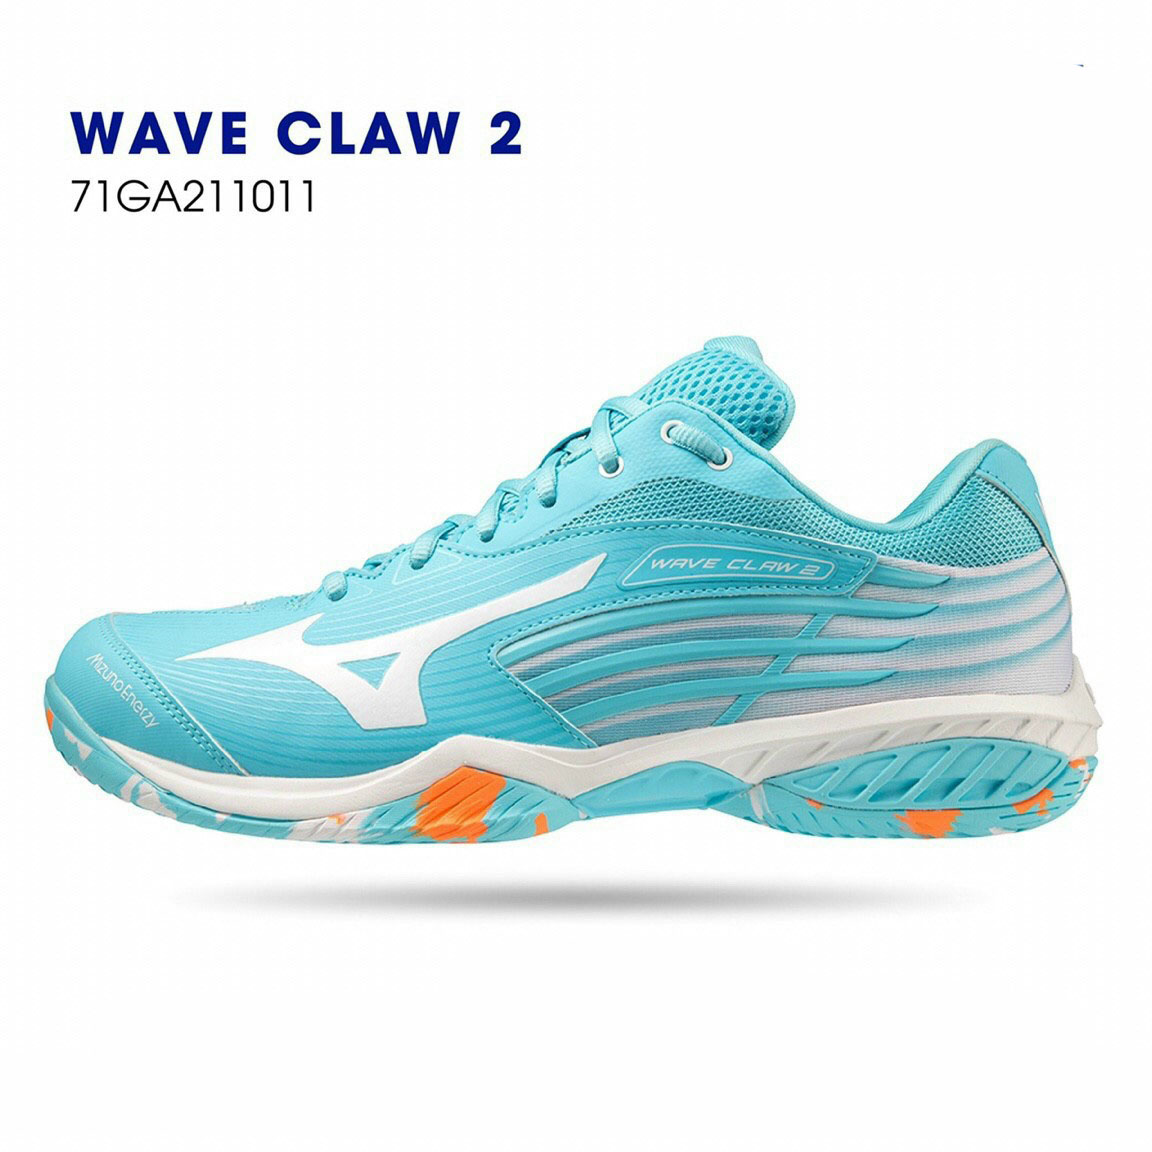 Giày cầu lông Mizuno chính hãng Wave Claw 2 mẫu mới có 2 màu lựa chọn dành